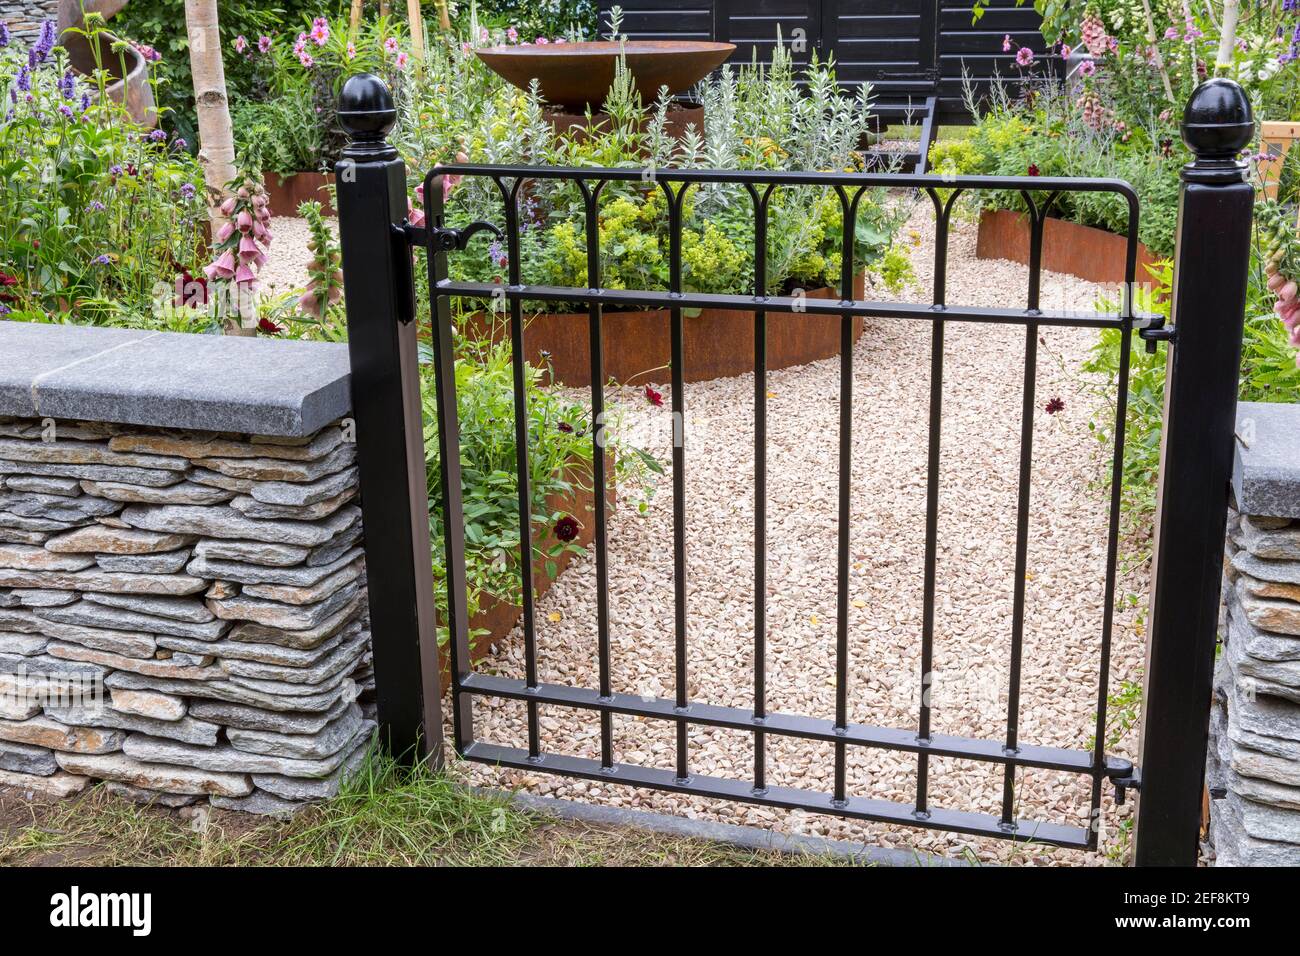 Ein bemaltes schwarzes Metallgartentor - trockene Steinmauer Blick auf englischen Cottage Country Garten mit Schotterweg und Blumenbeete Garten Grenze England Großbritannien Stockfoto